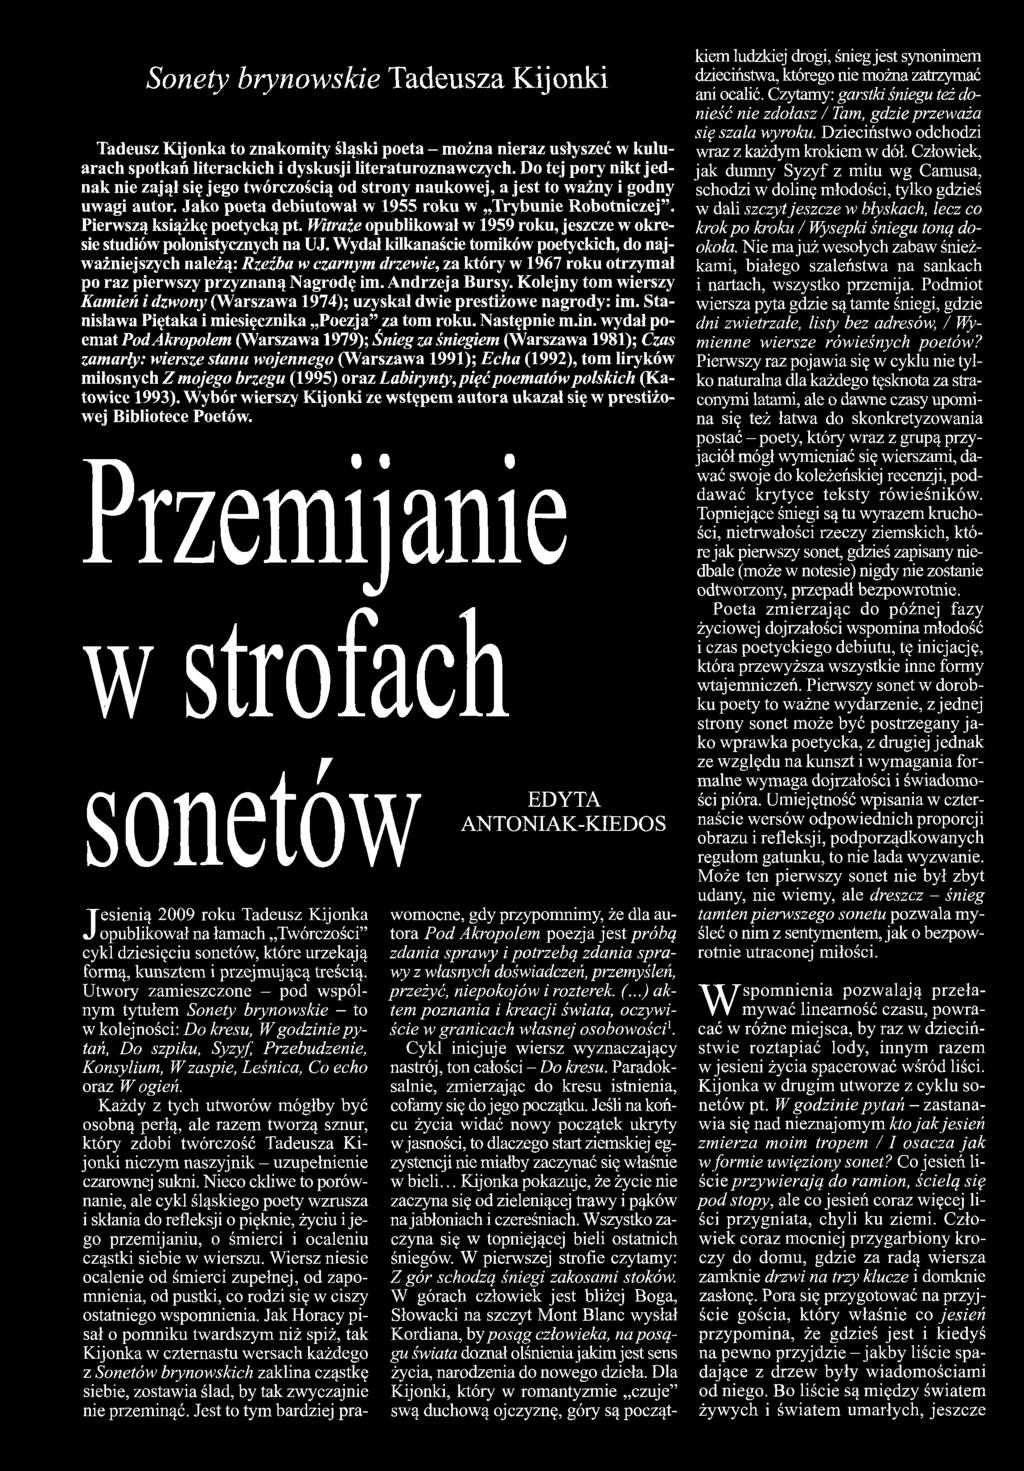 Kolejny tom wierszy Kamień i dzwony (Warszawa 1974); uzyskał dwie prestiżowe nagrody: im. Stanisława Piętaka i miesięcznika Poezja za tom roku. Następnie m.in.